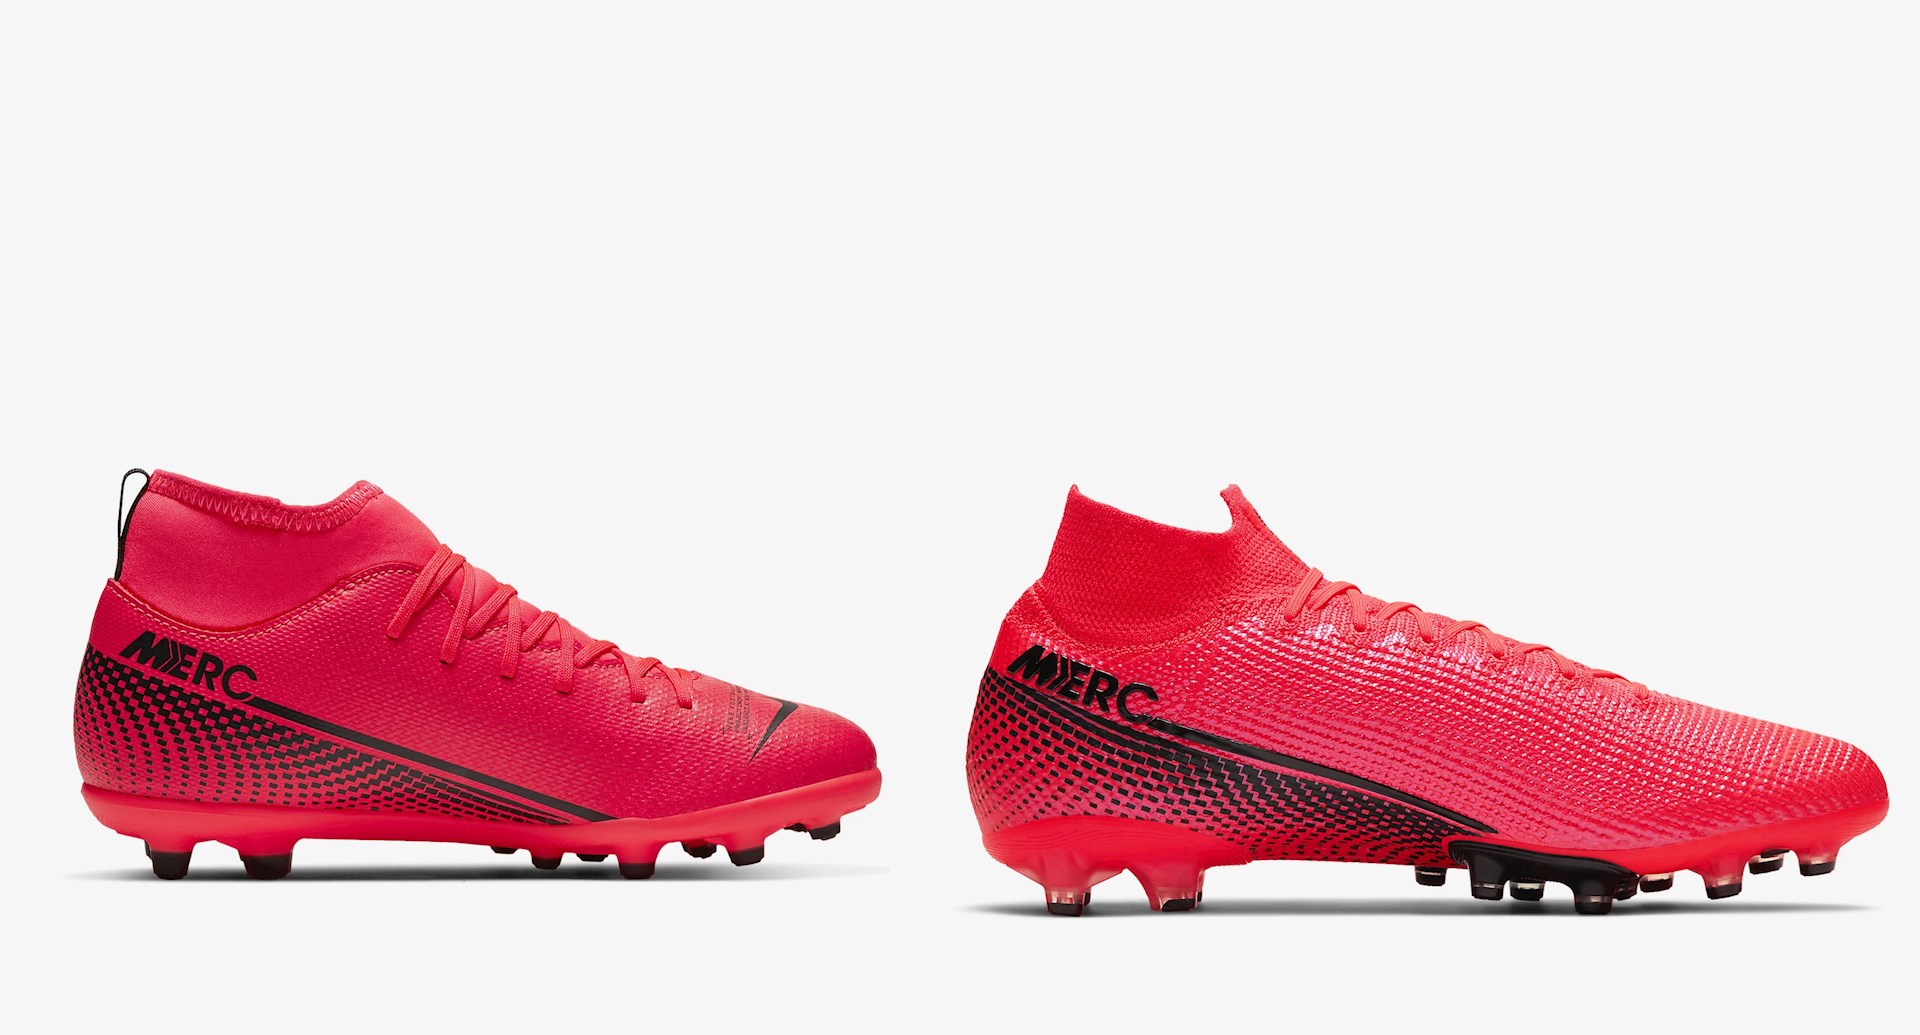 Goedkope Nike Mercurial Superfly voetbalschoenen met sok